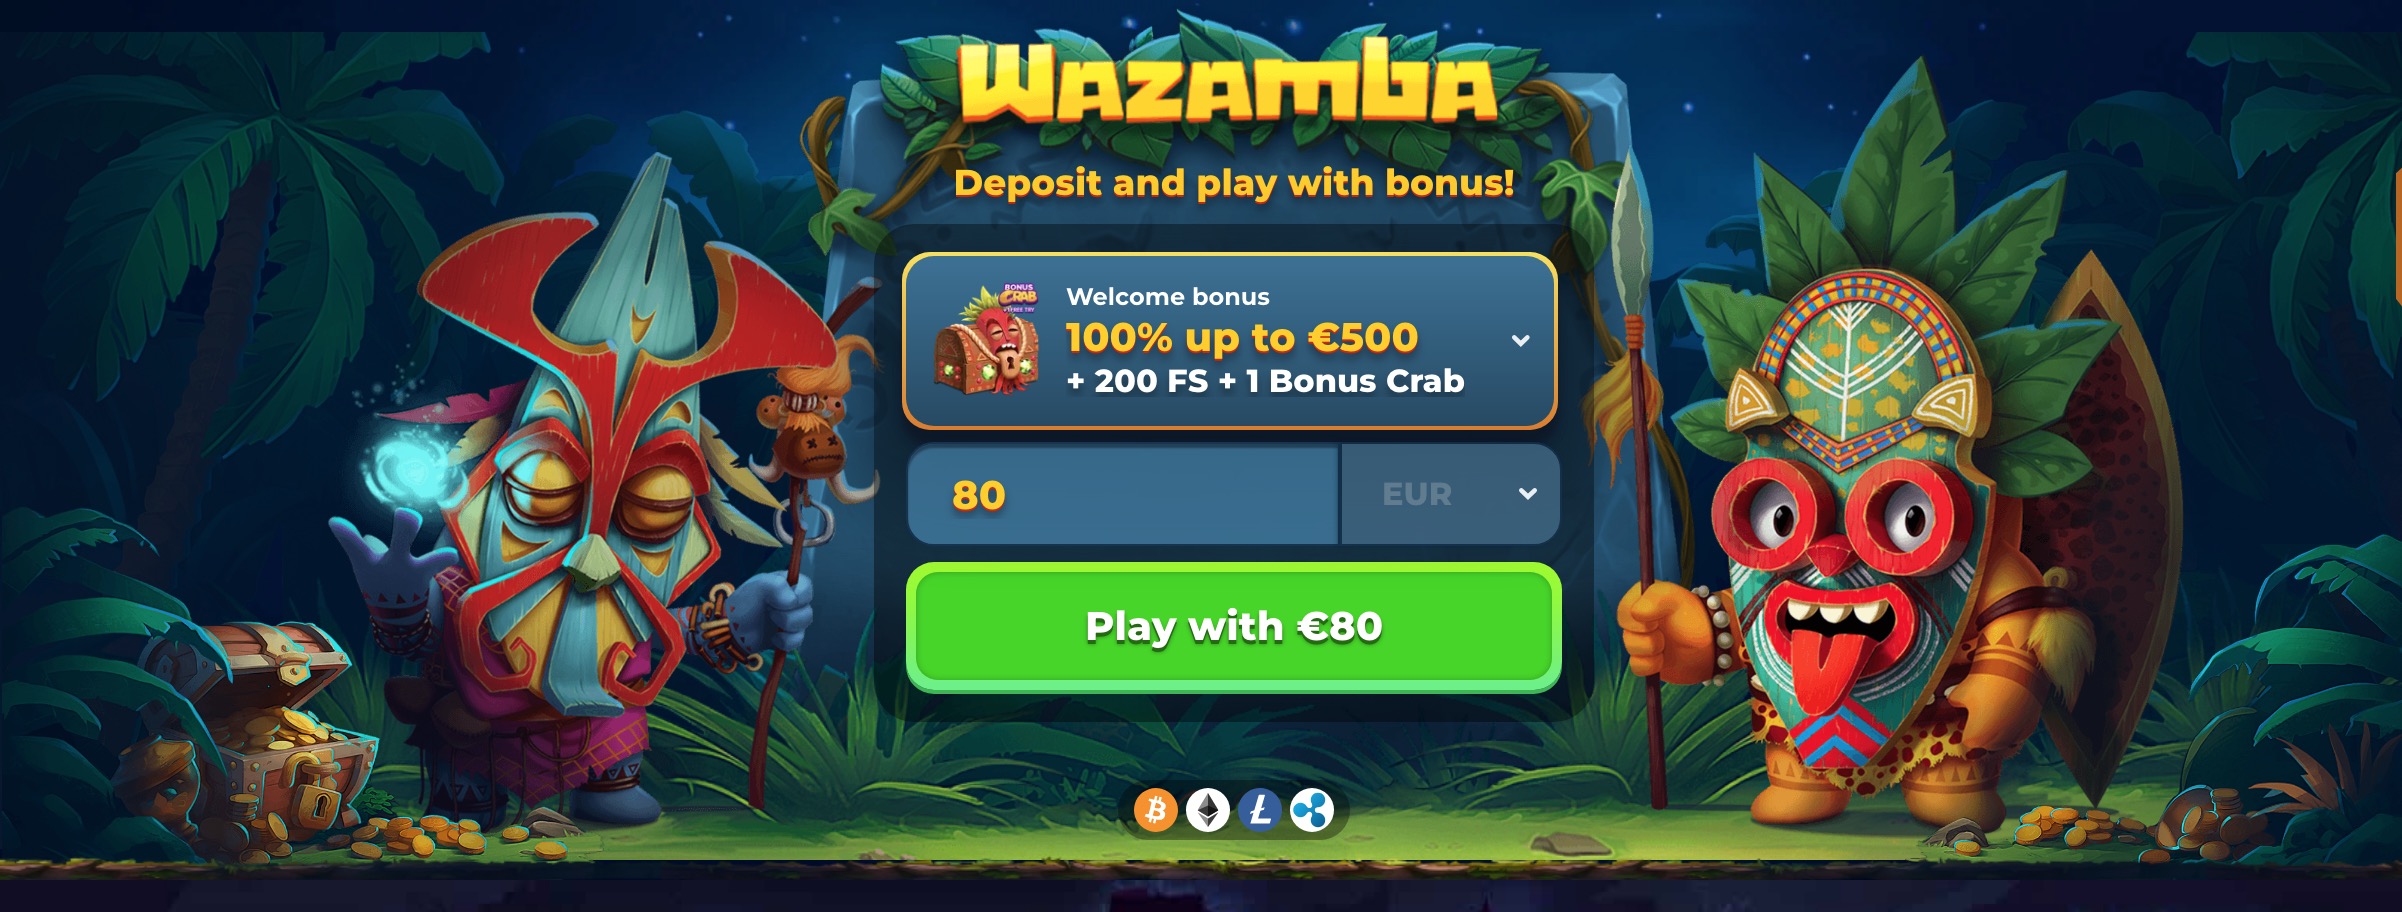 Wazamba Casino Overview